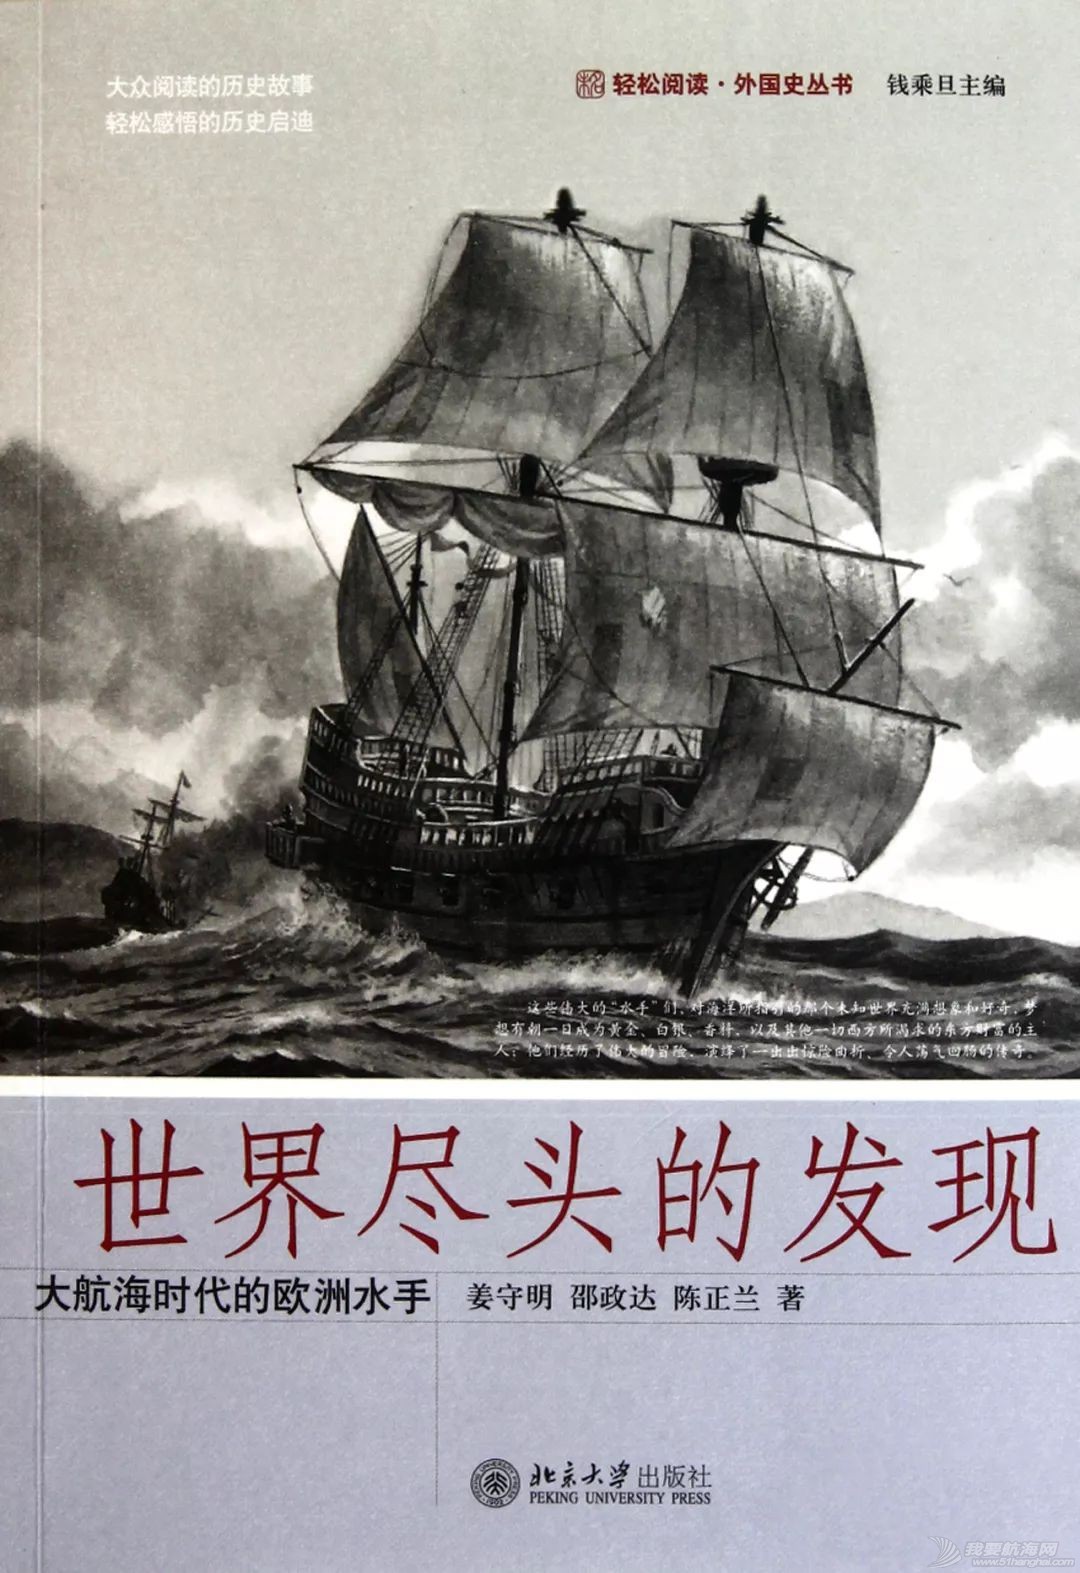 帆船*书籍:十本值得航海人品阅的书籍 |帆船贺新春③w7.jpg